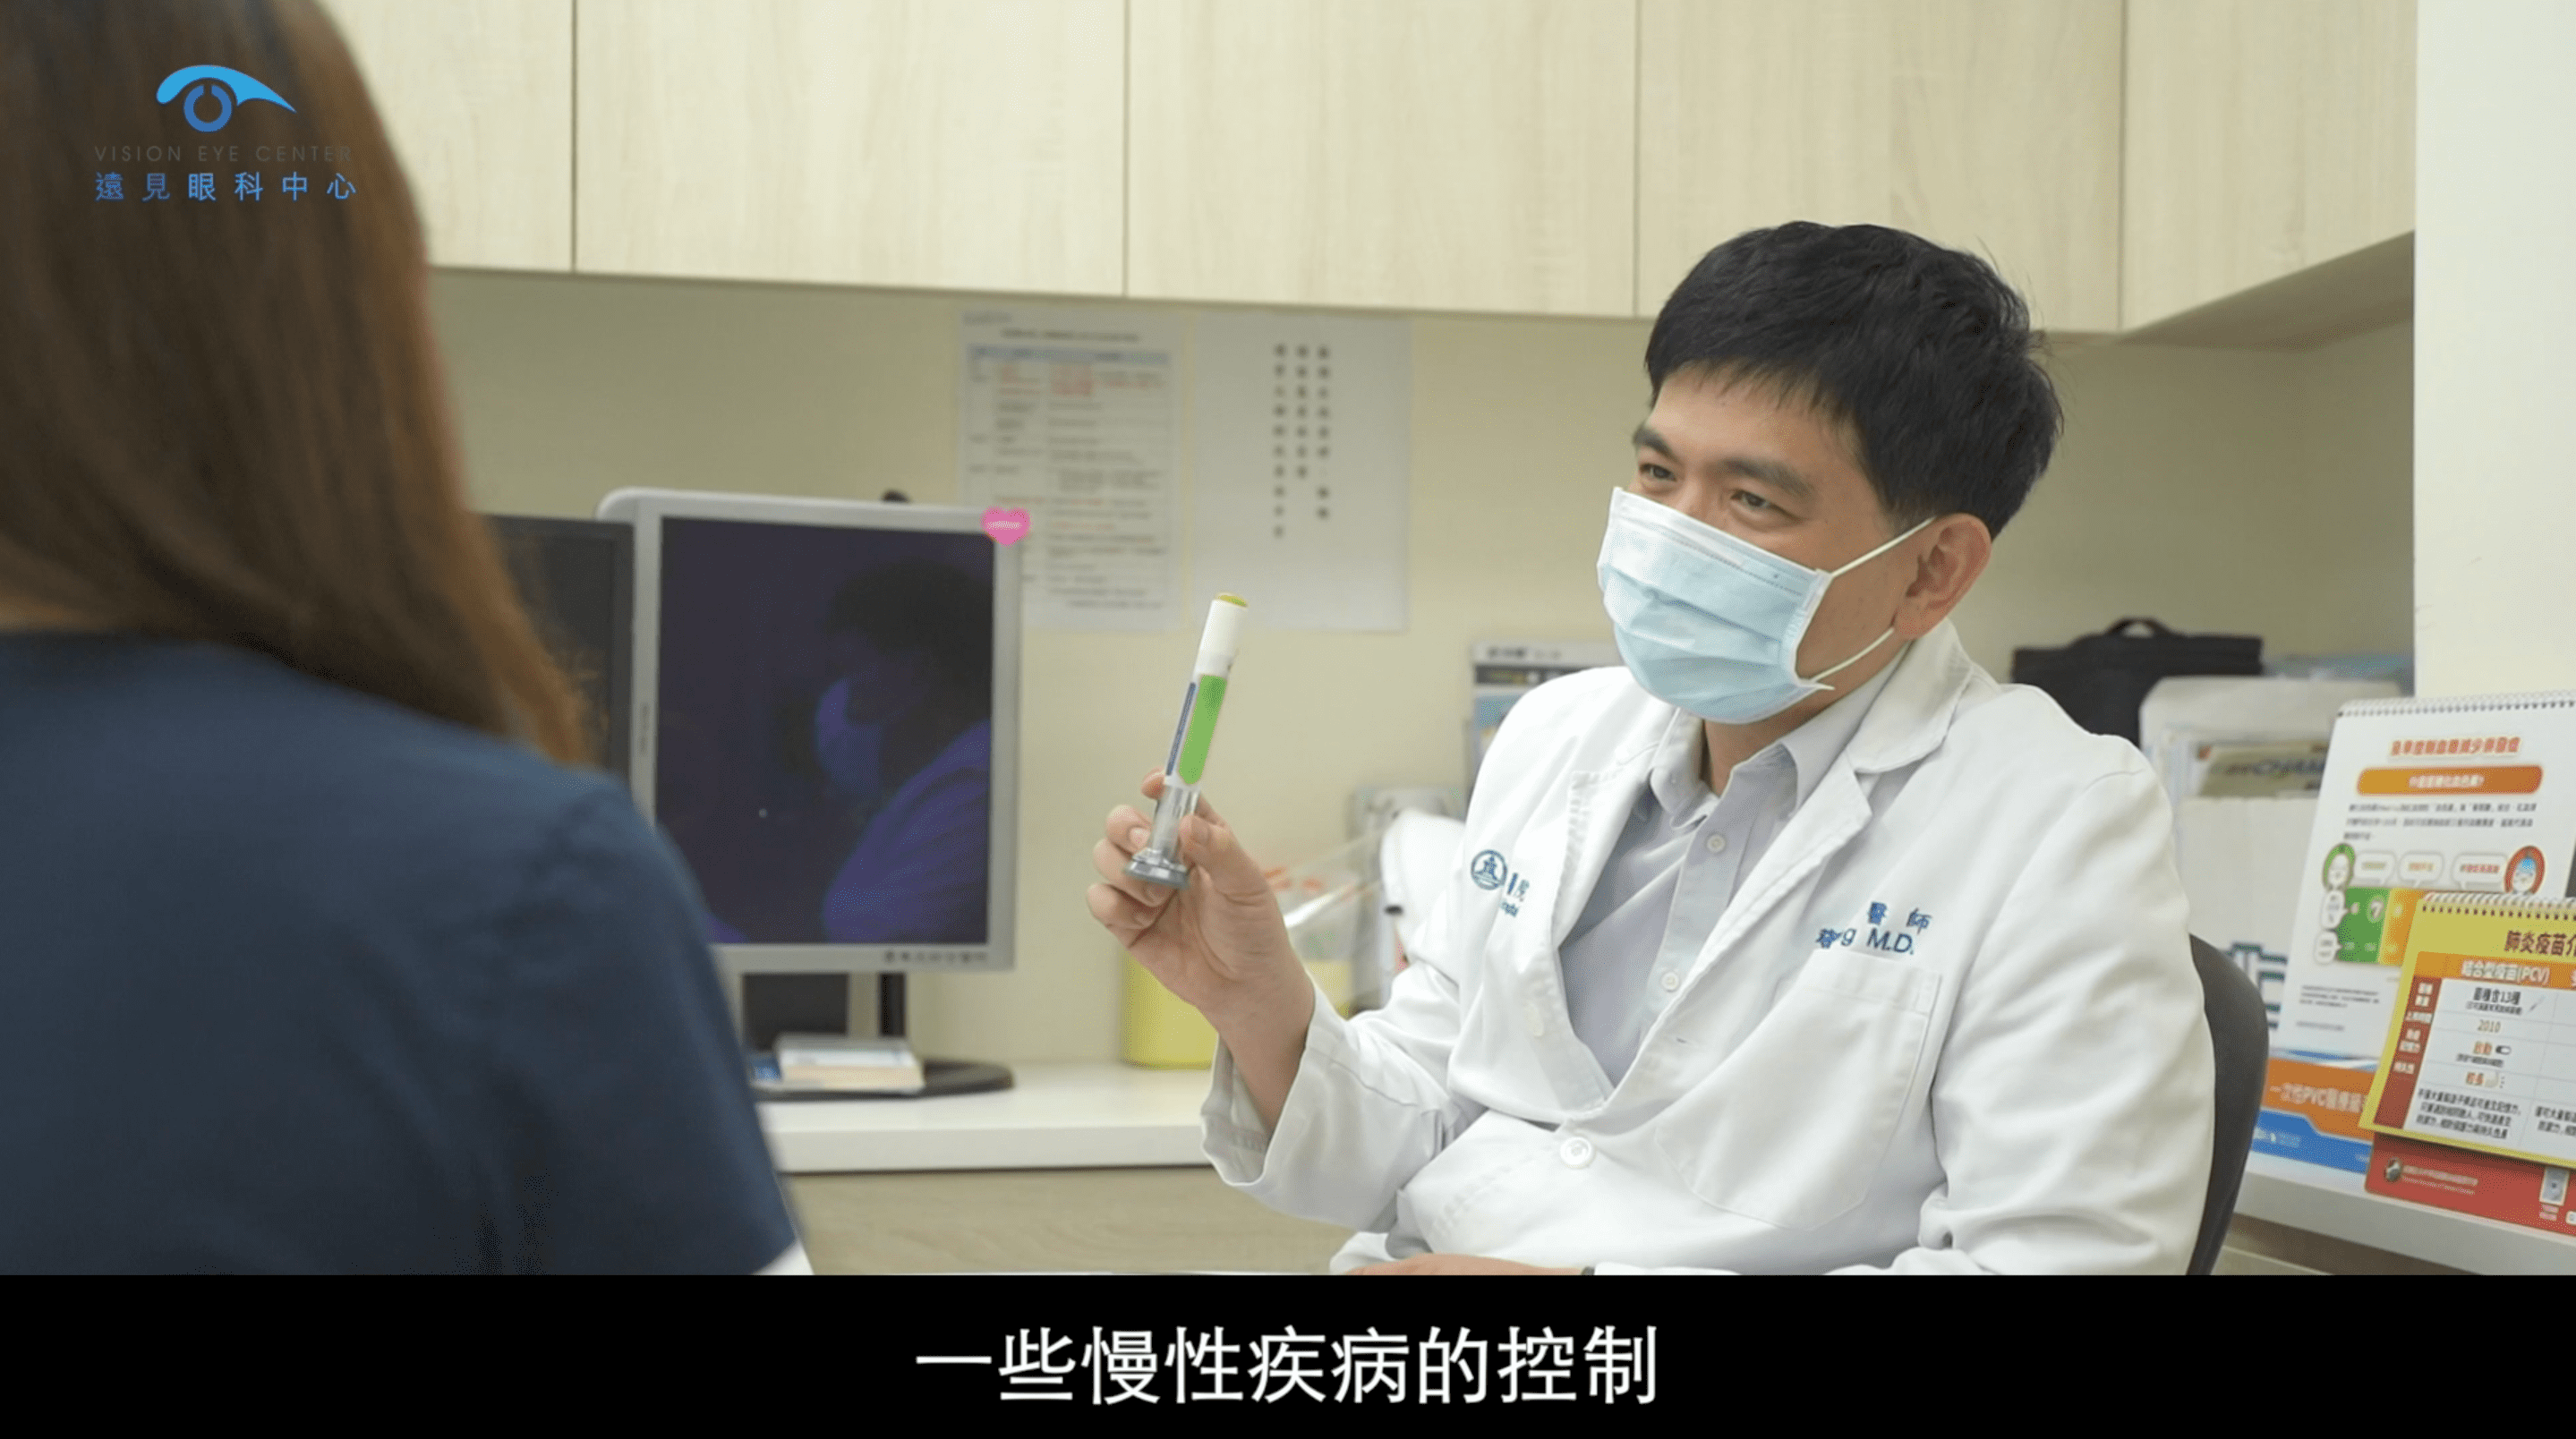 鄧仲華醫師進行完LBV裸視美老花雷射後擺脫眼鏡的診療畫面